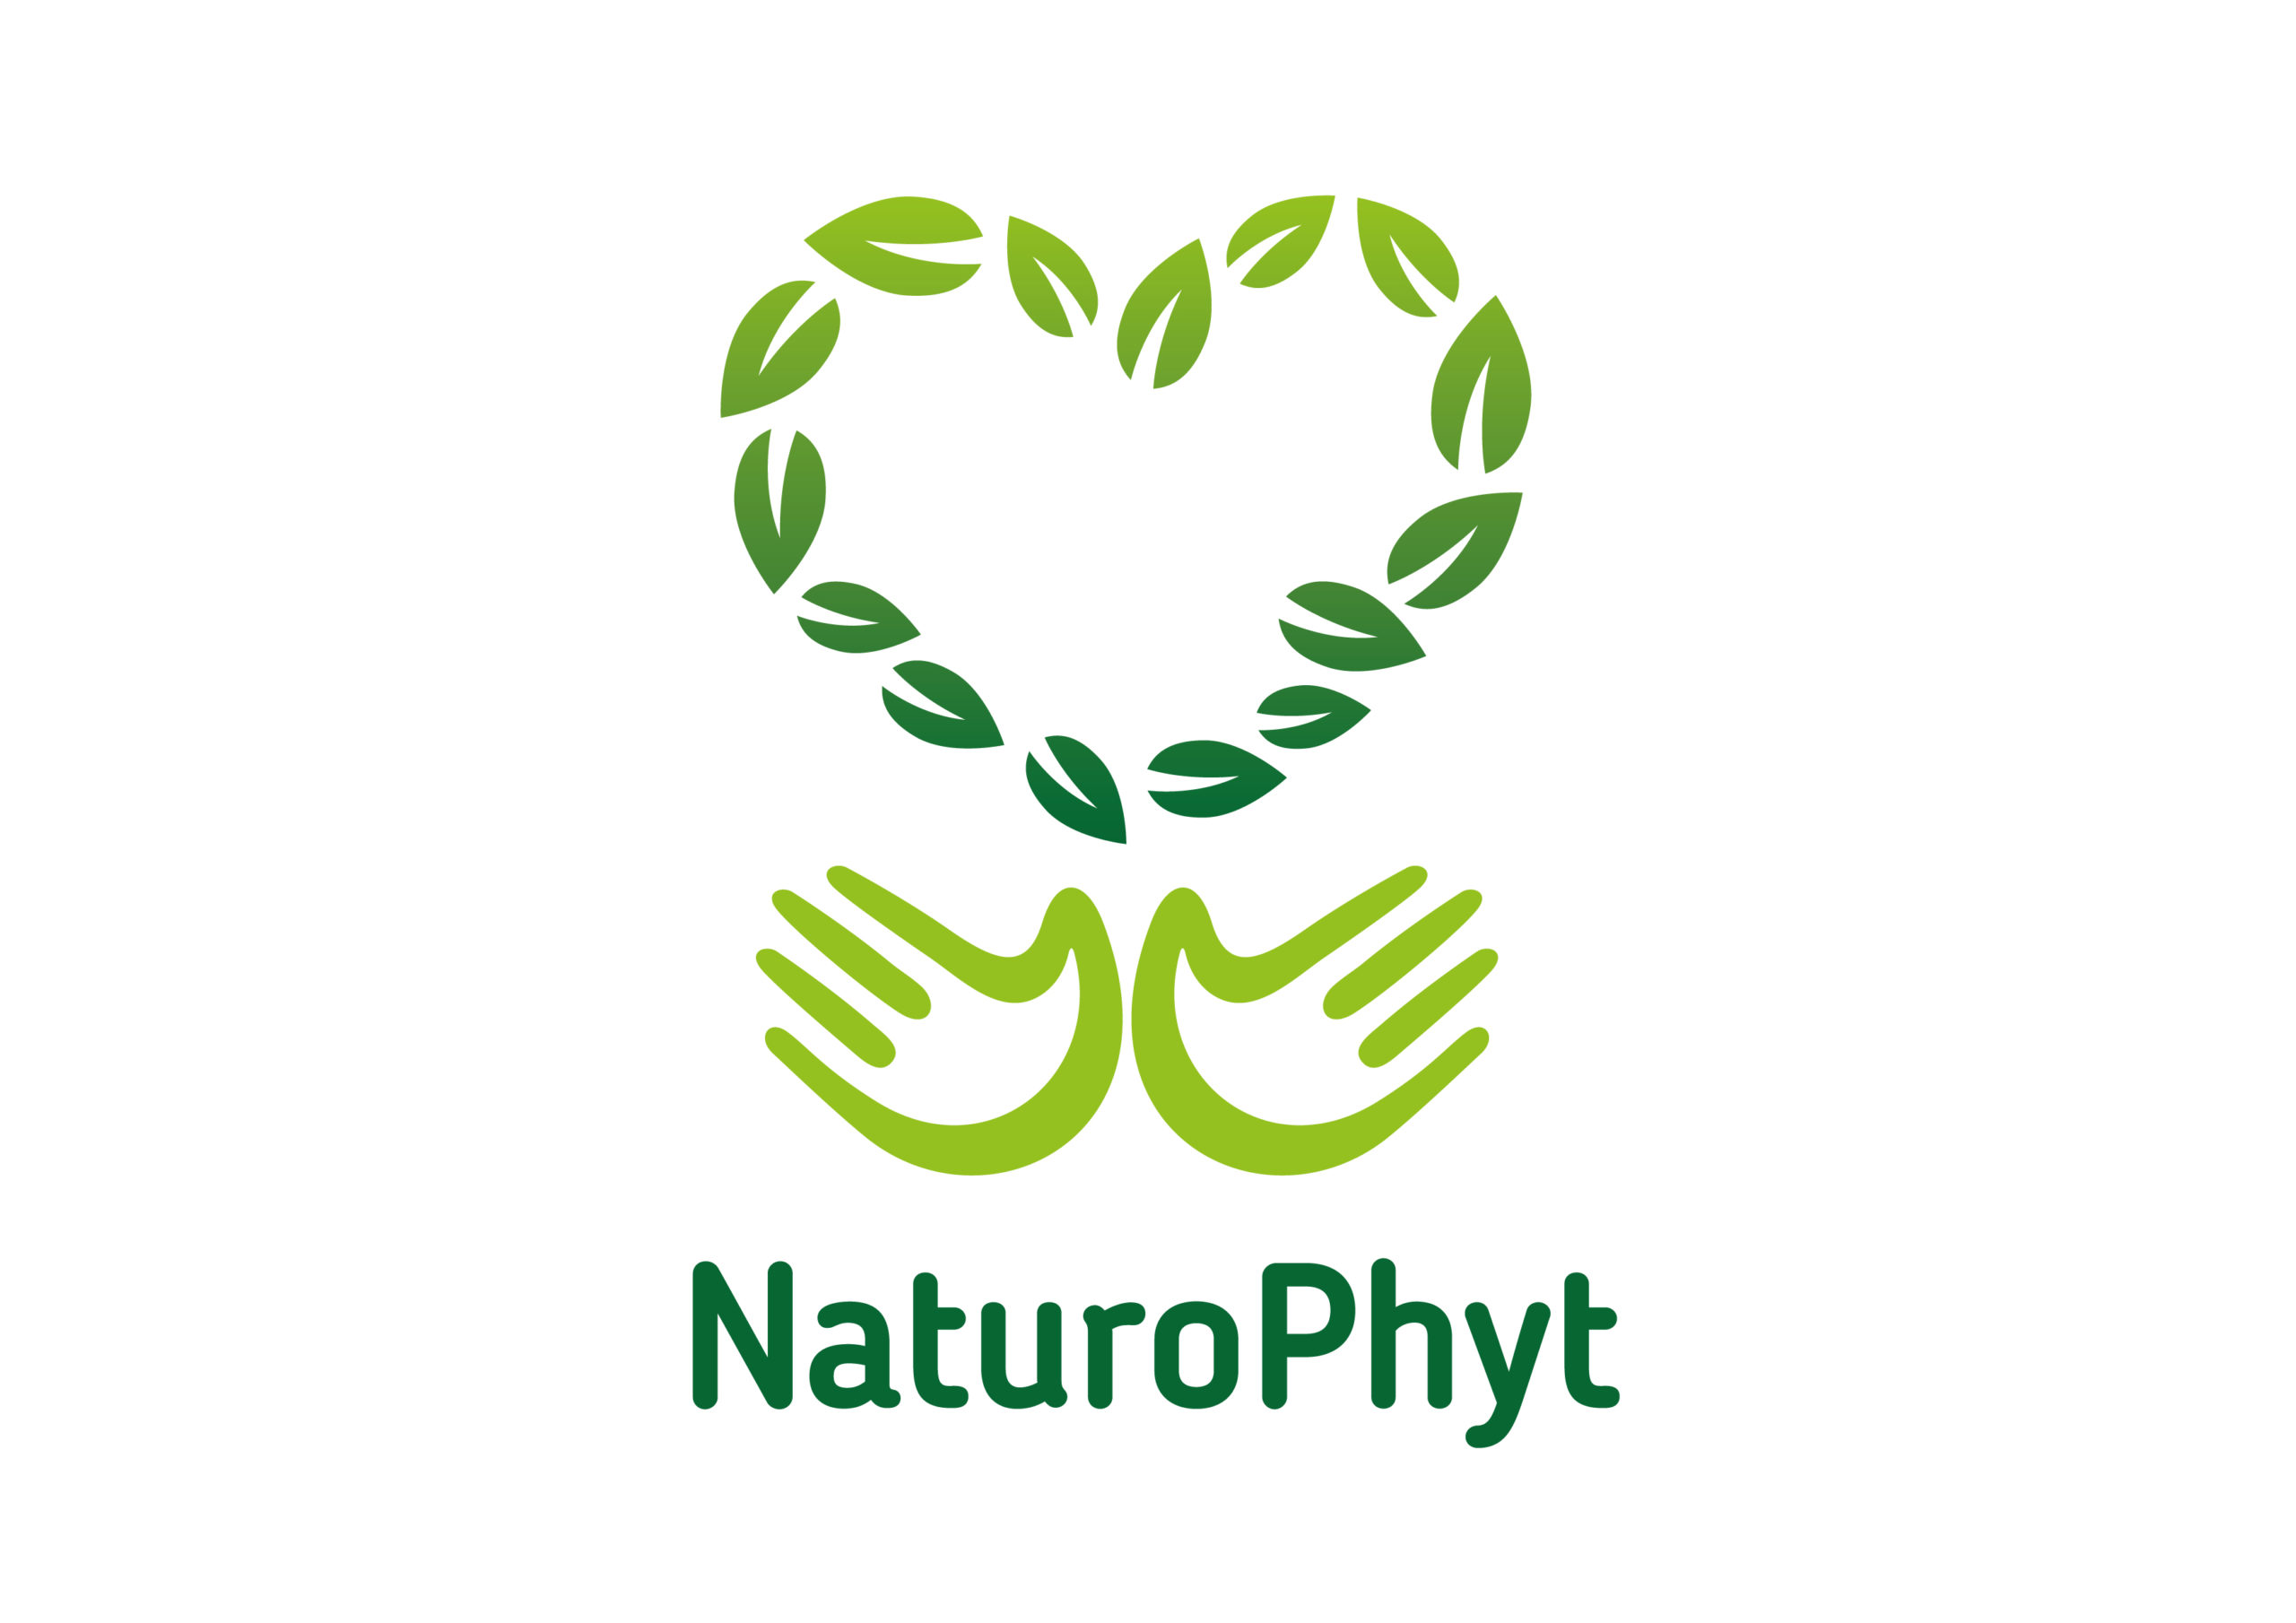 NaturoPhyt